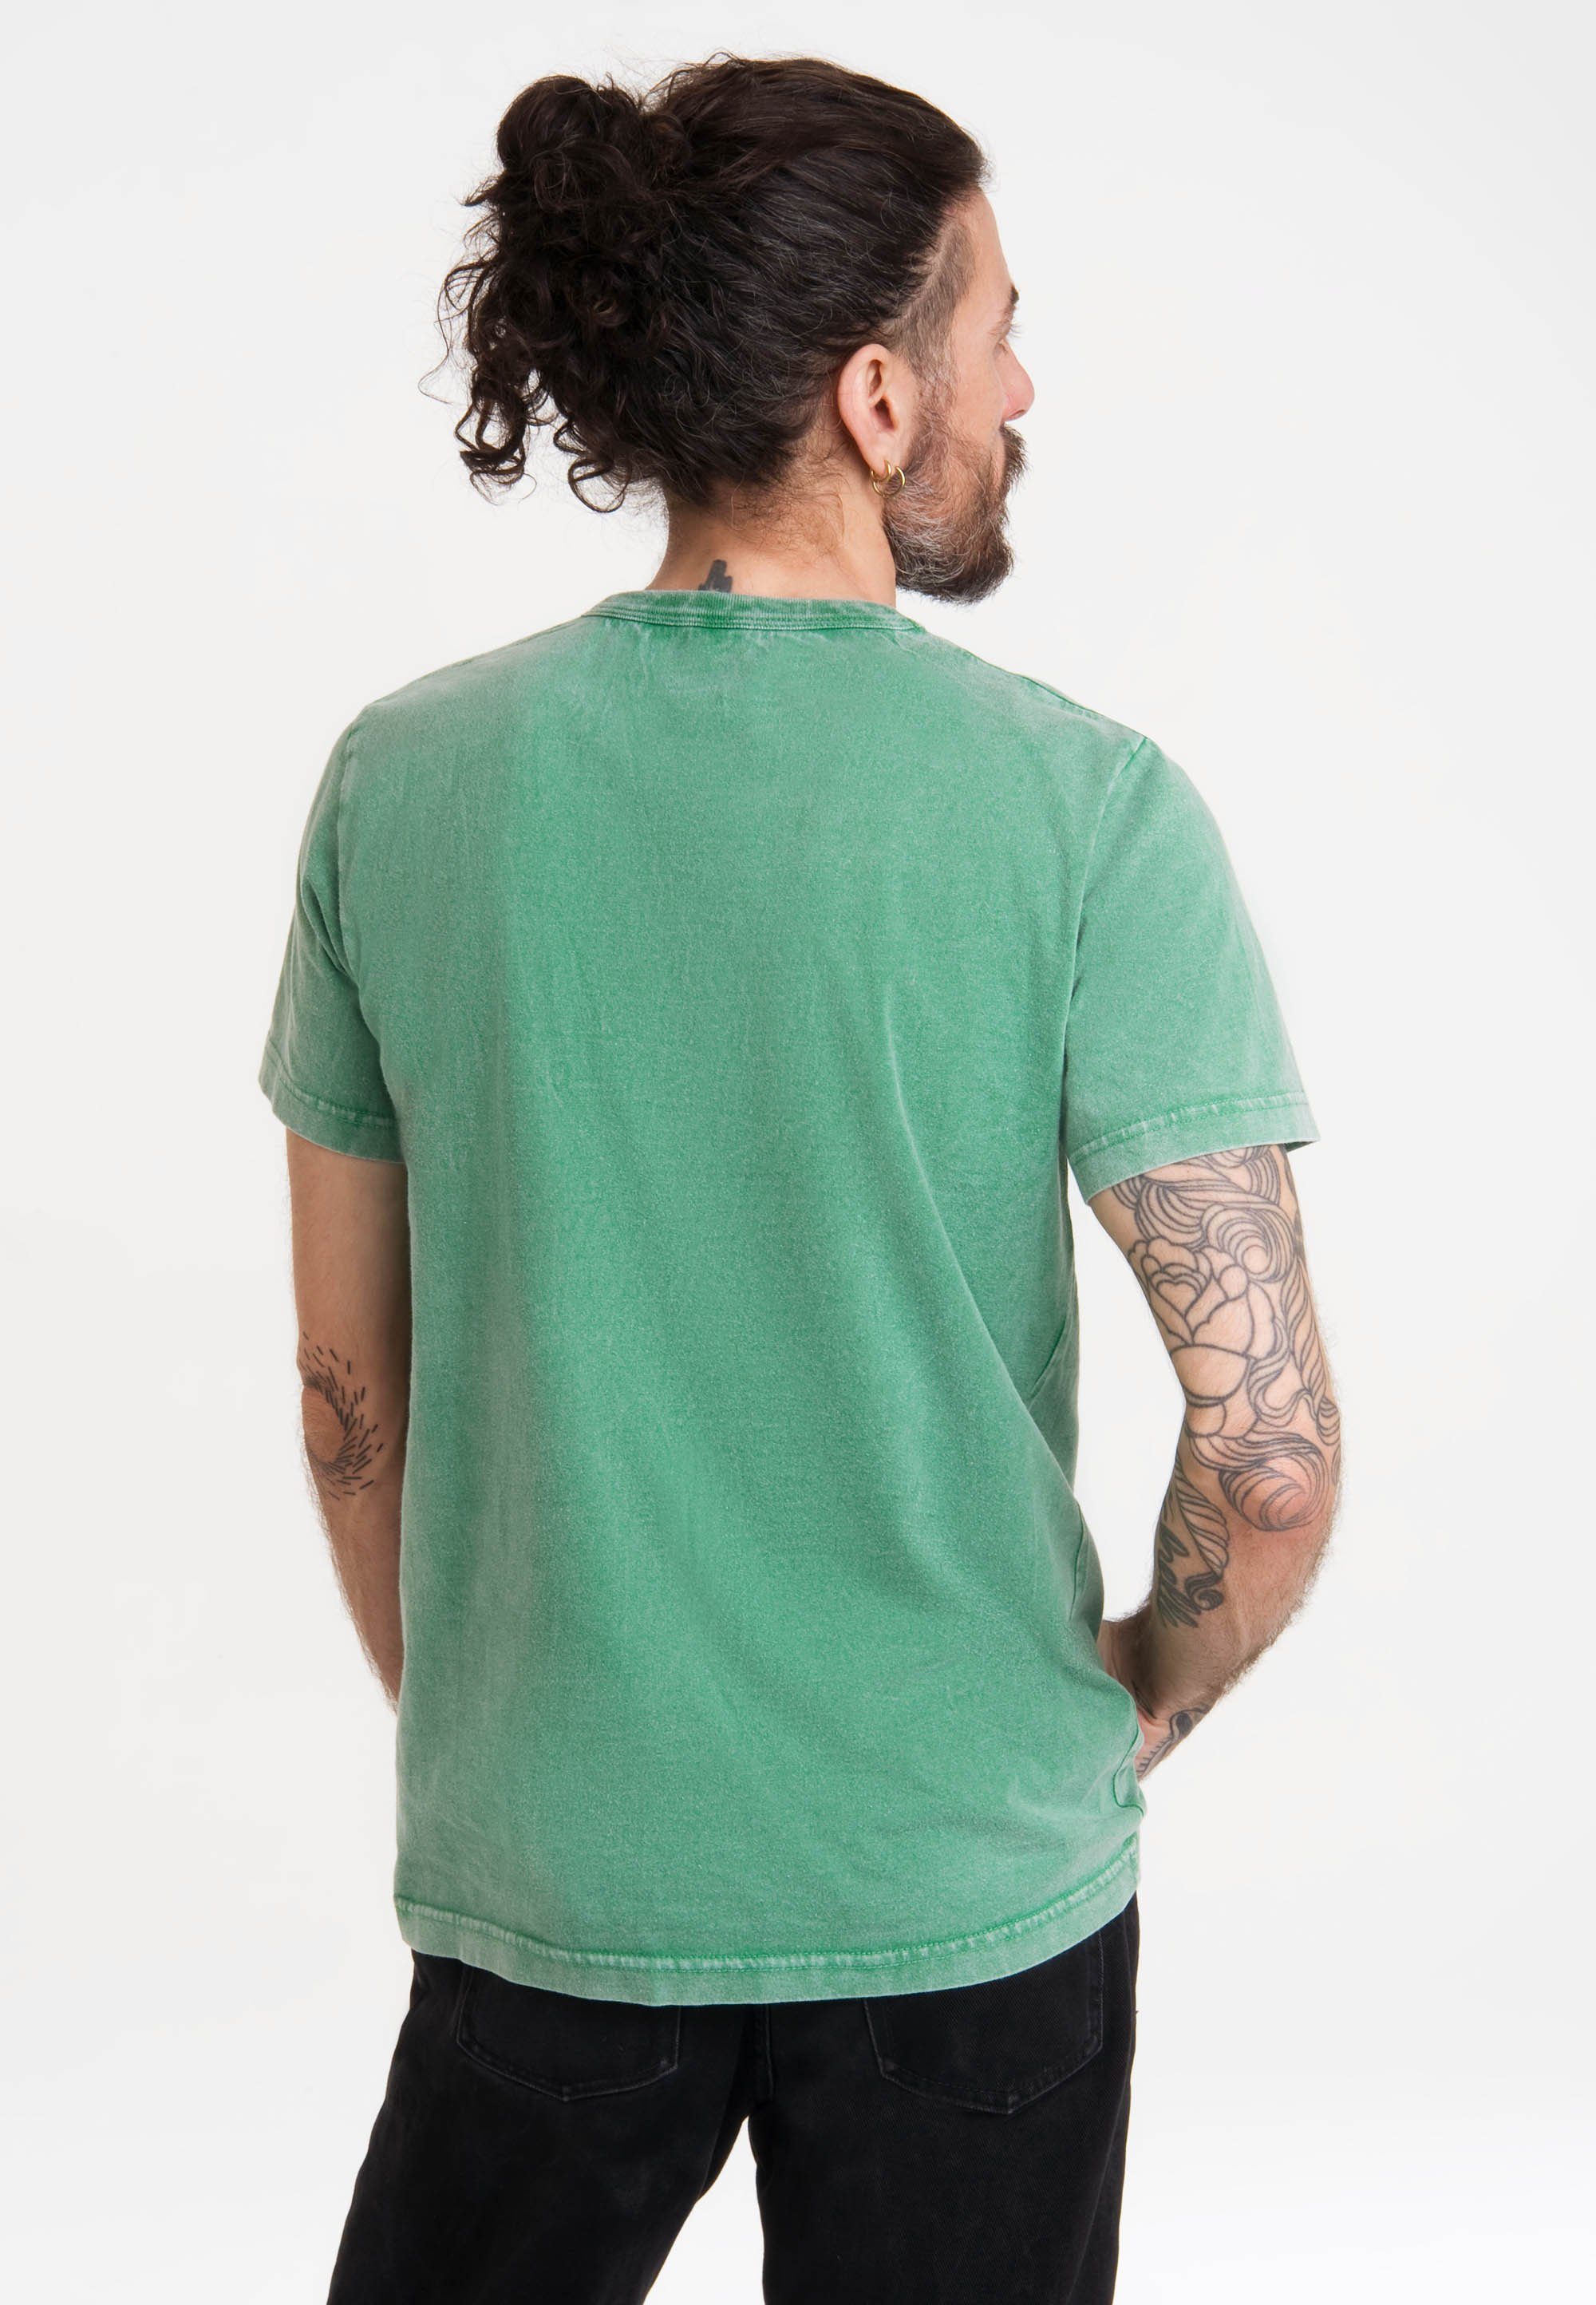 grün mit LOGOSHIRT Looney - Speedy Gonzales T-Shirt Tunes Print lizenziertem